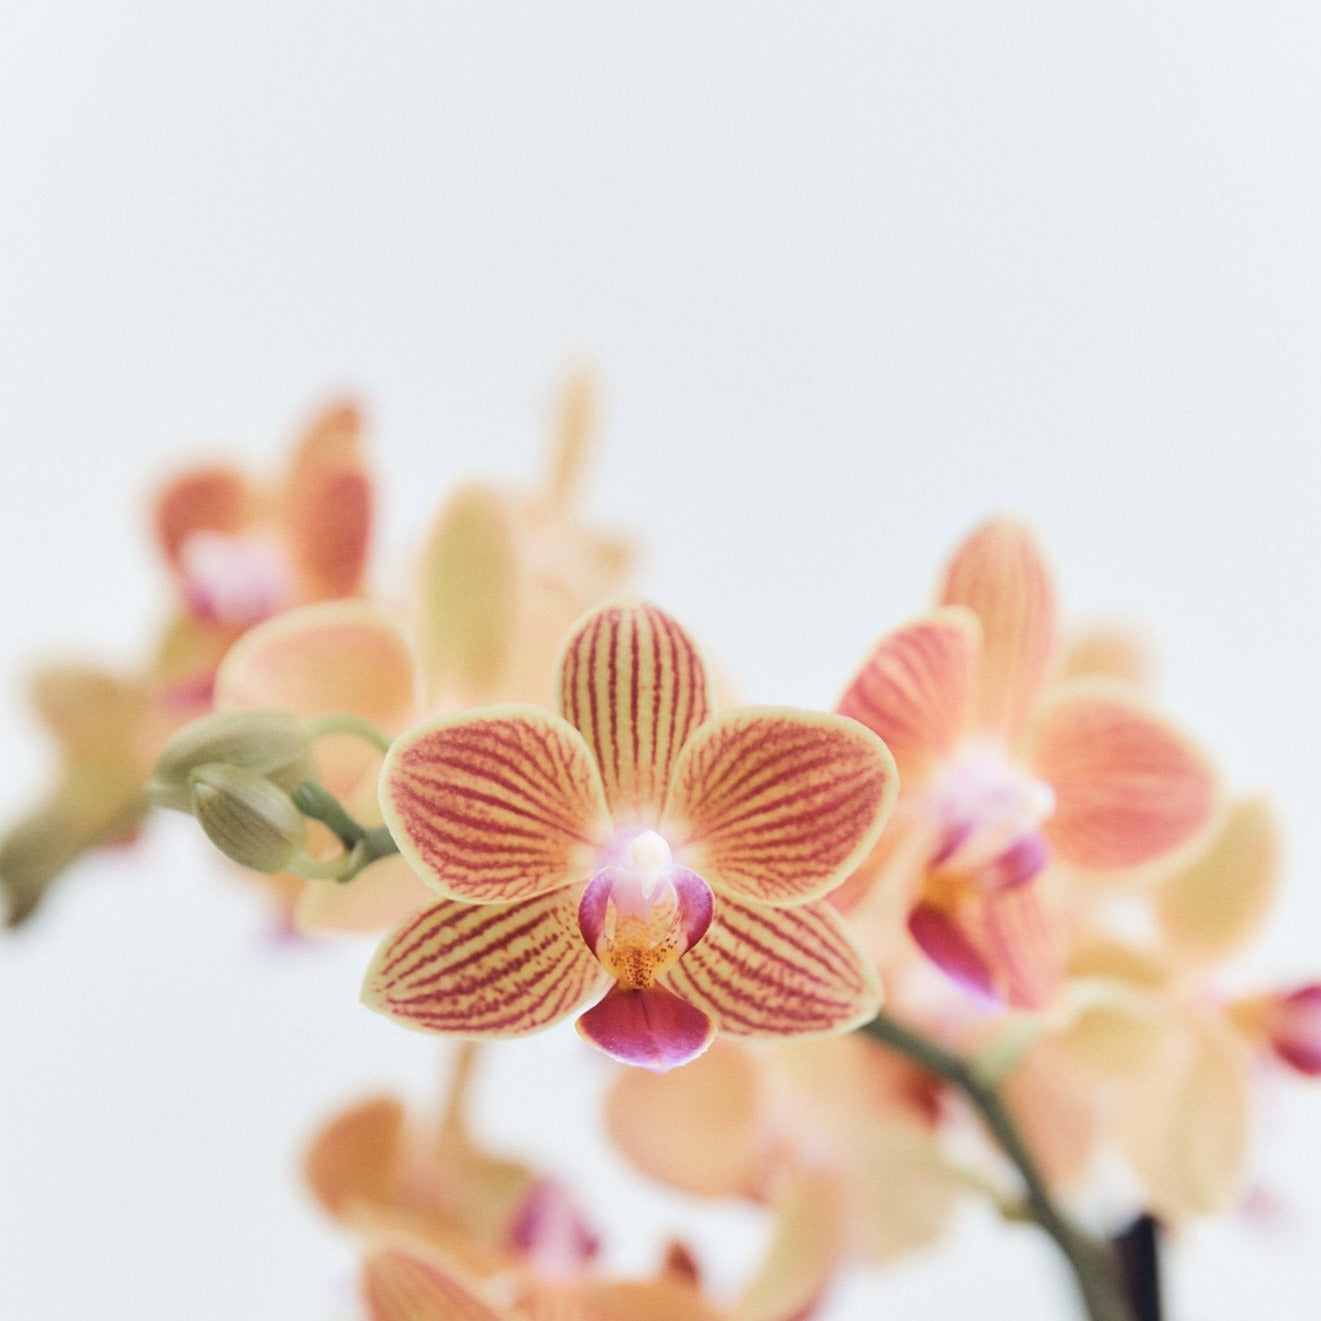 Mini Local Orchid | Braer Studio